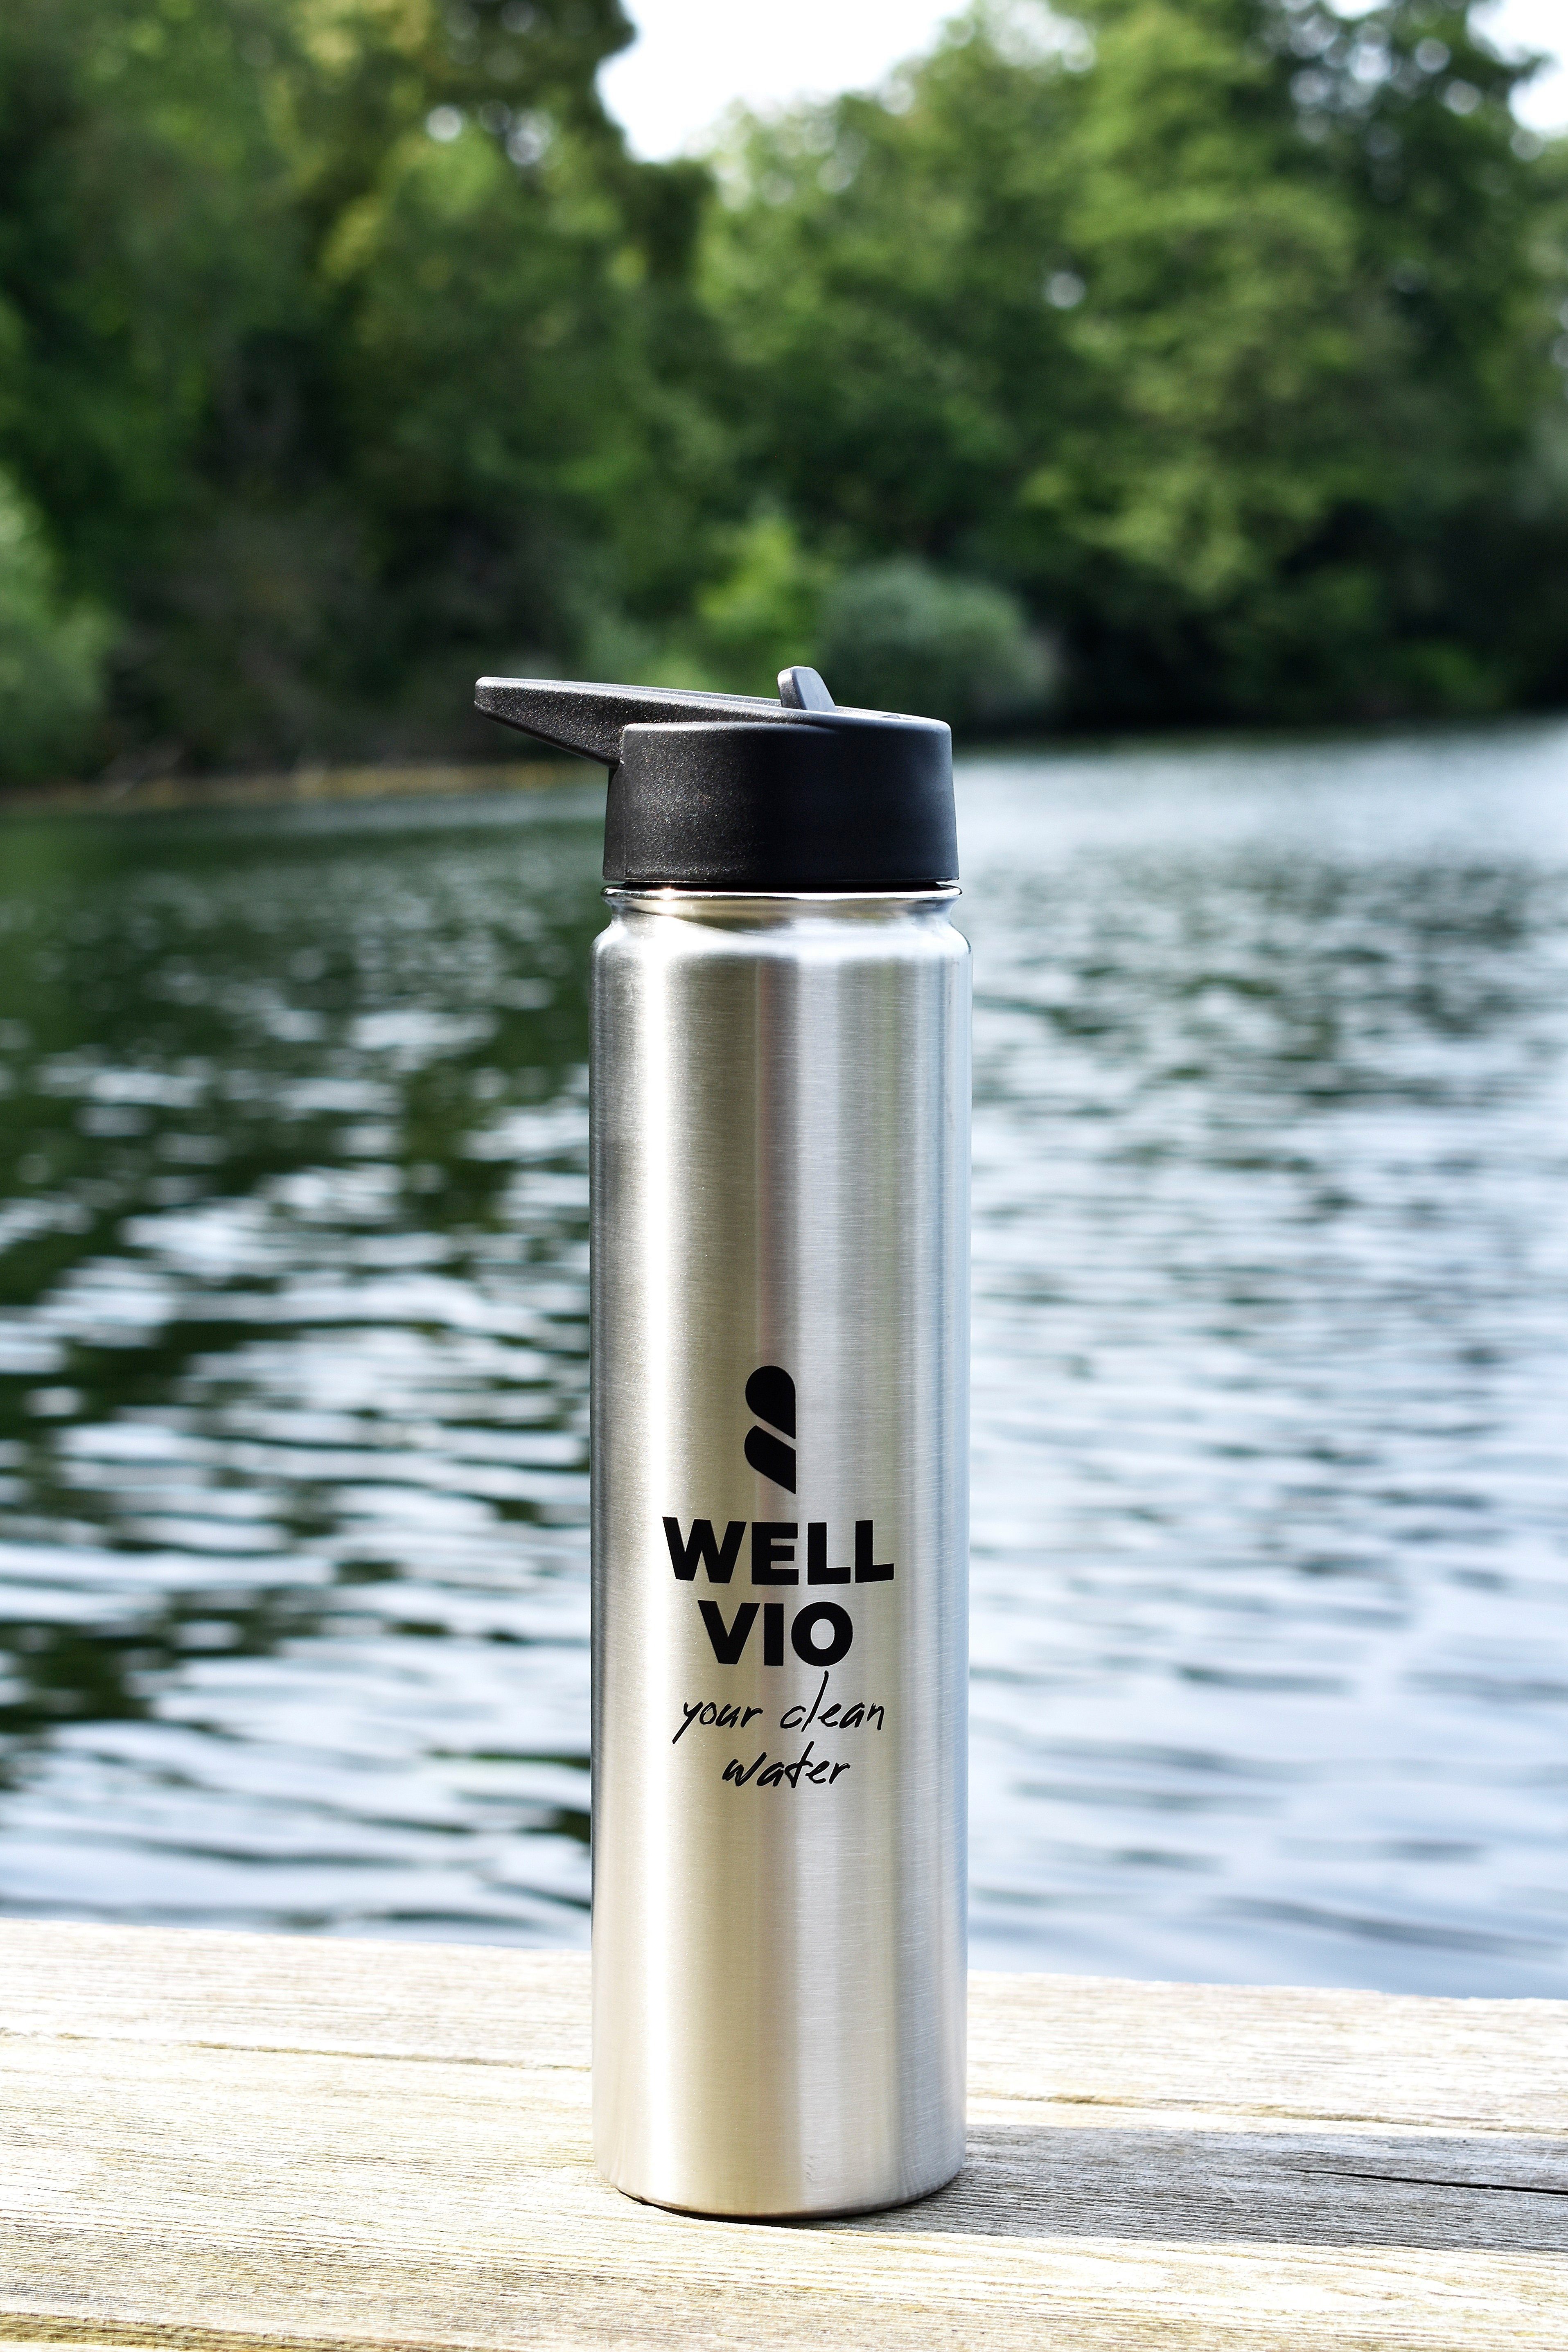 Edelstahl Viobottle WELLVIO mit Filterflasche Nano-Al2O3-Technologie Trinkflasche neuer